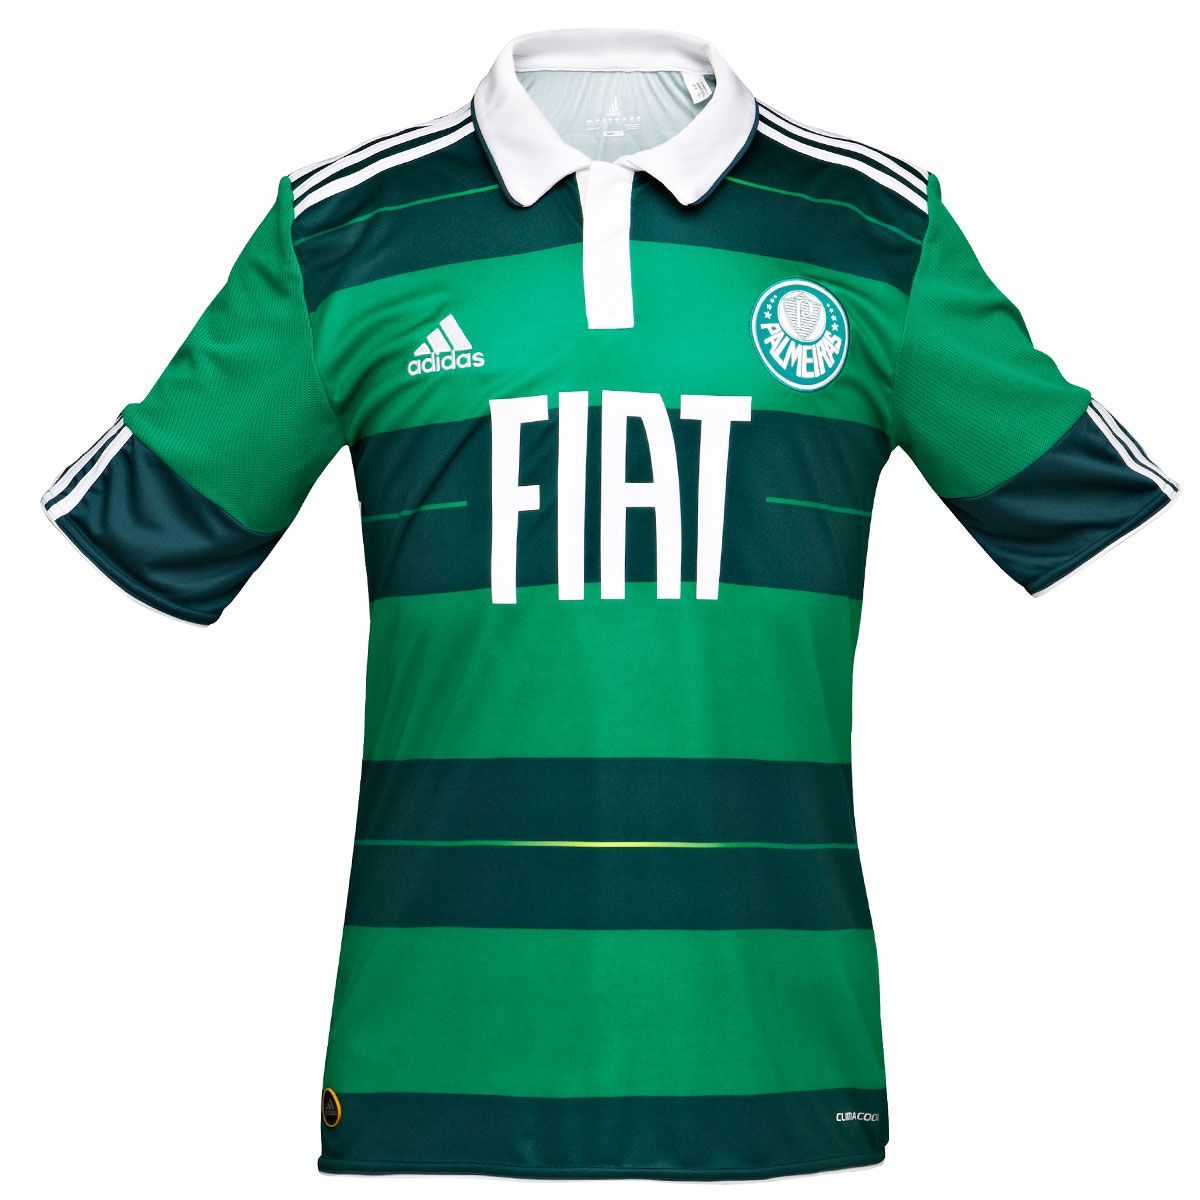 Brazilian teams Adidas 2011-12 Palmeiras Adidas 3rd Football Shirt